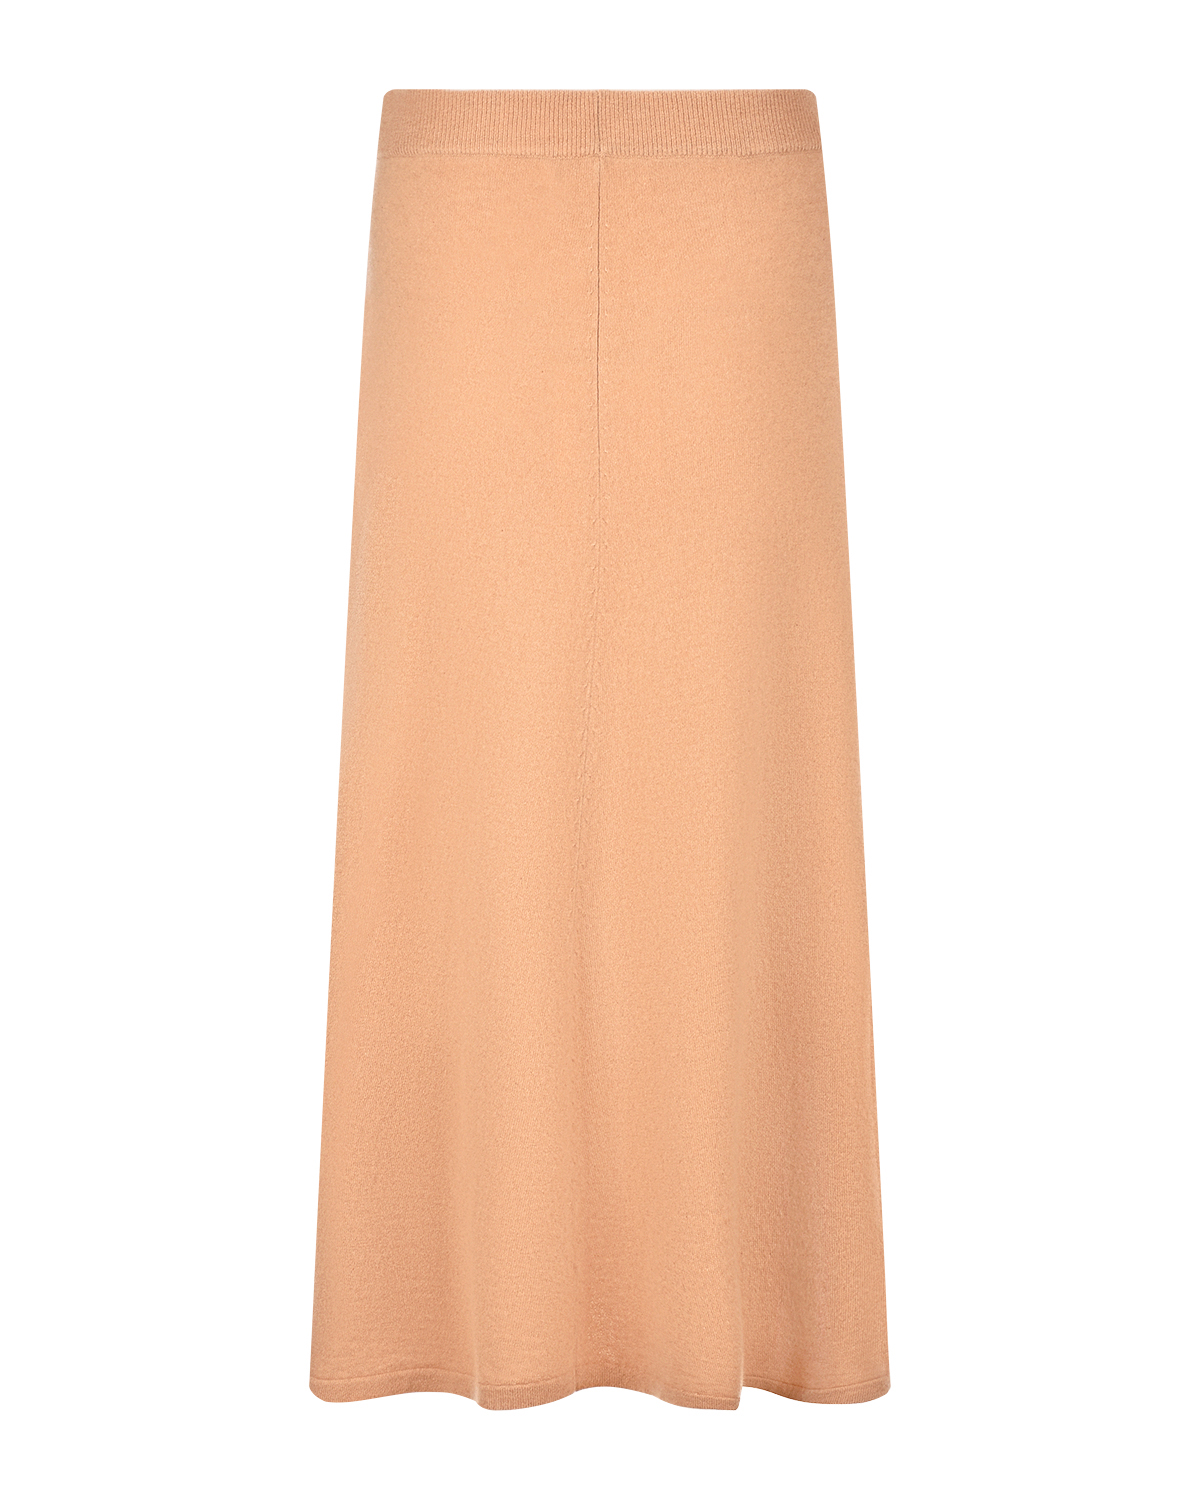 Коричневая юбка из кашемира Arch4, размер 40, цвет коричневый - фото 6